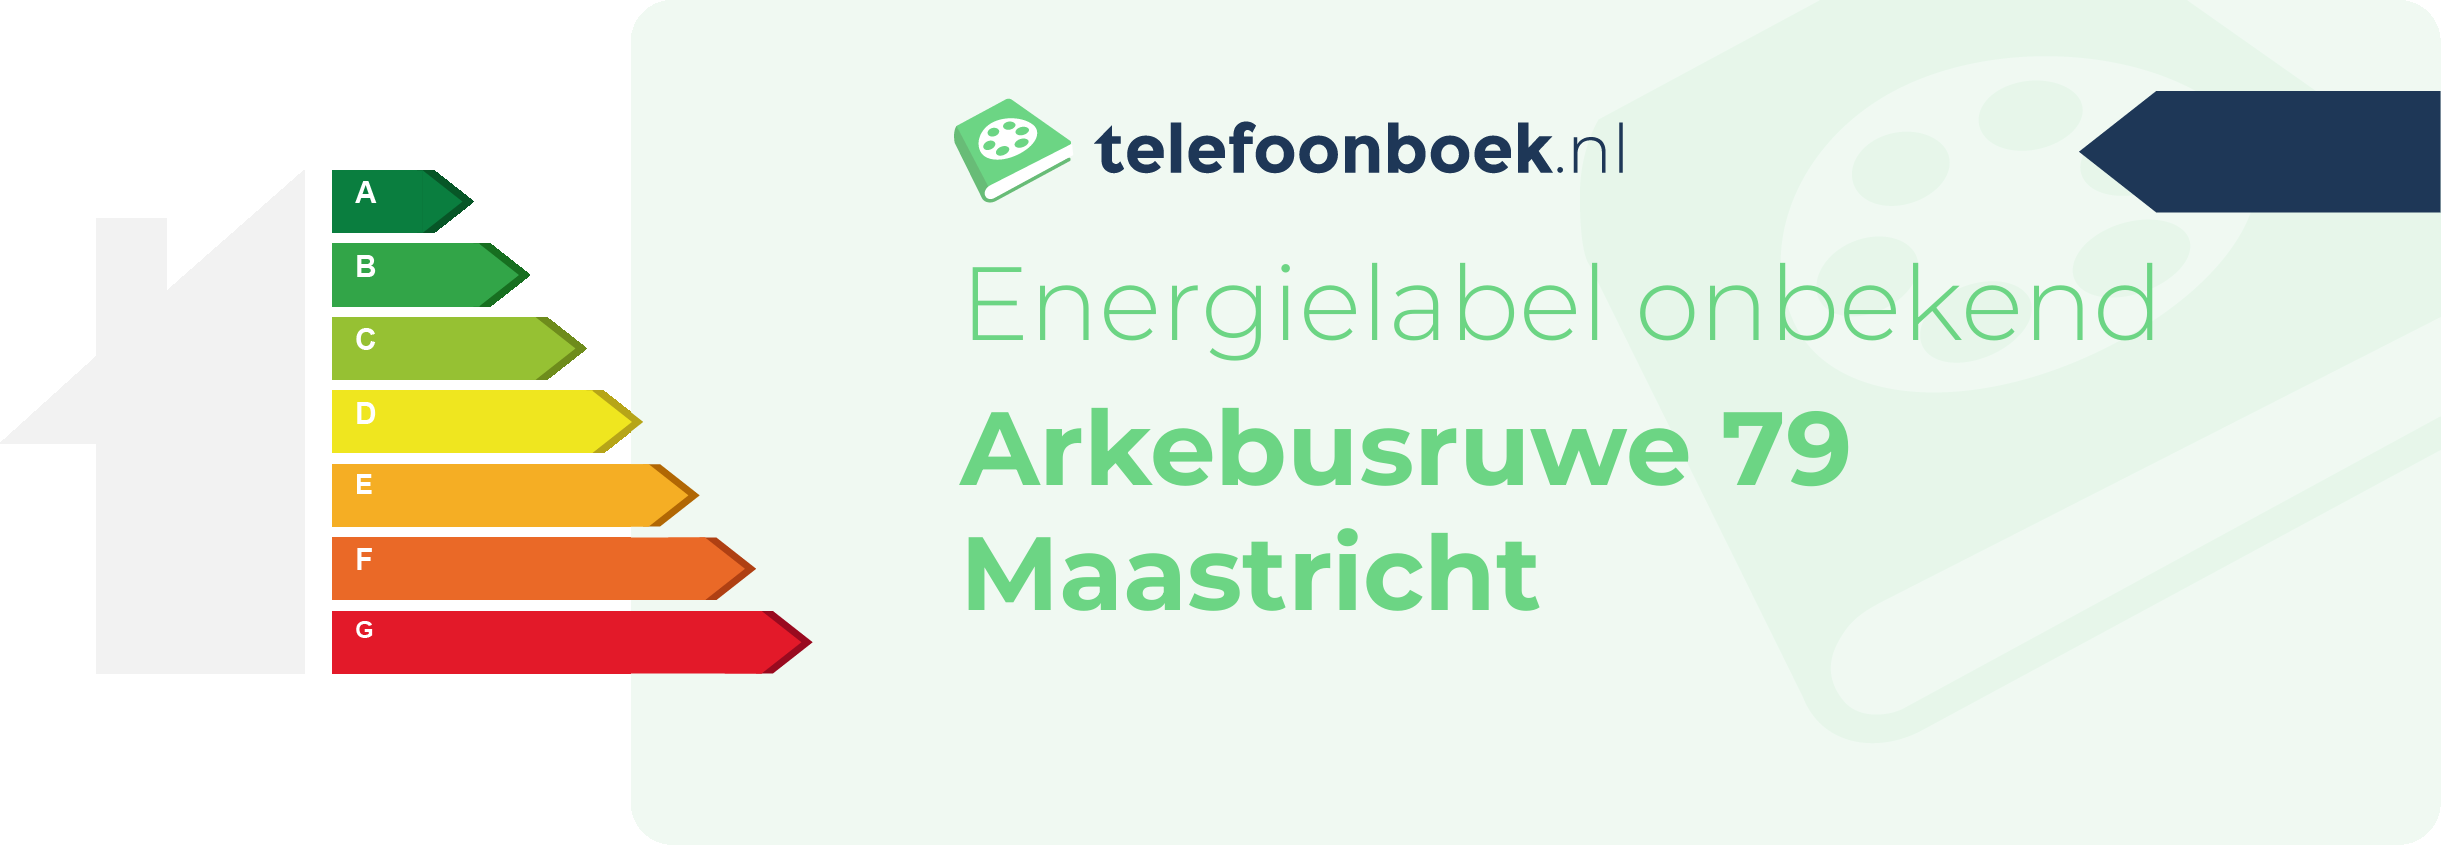 Energielabel Arkebusruwe 79 Maastricht